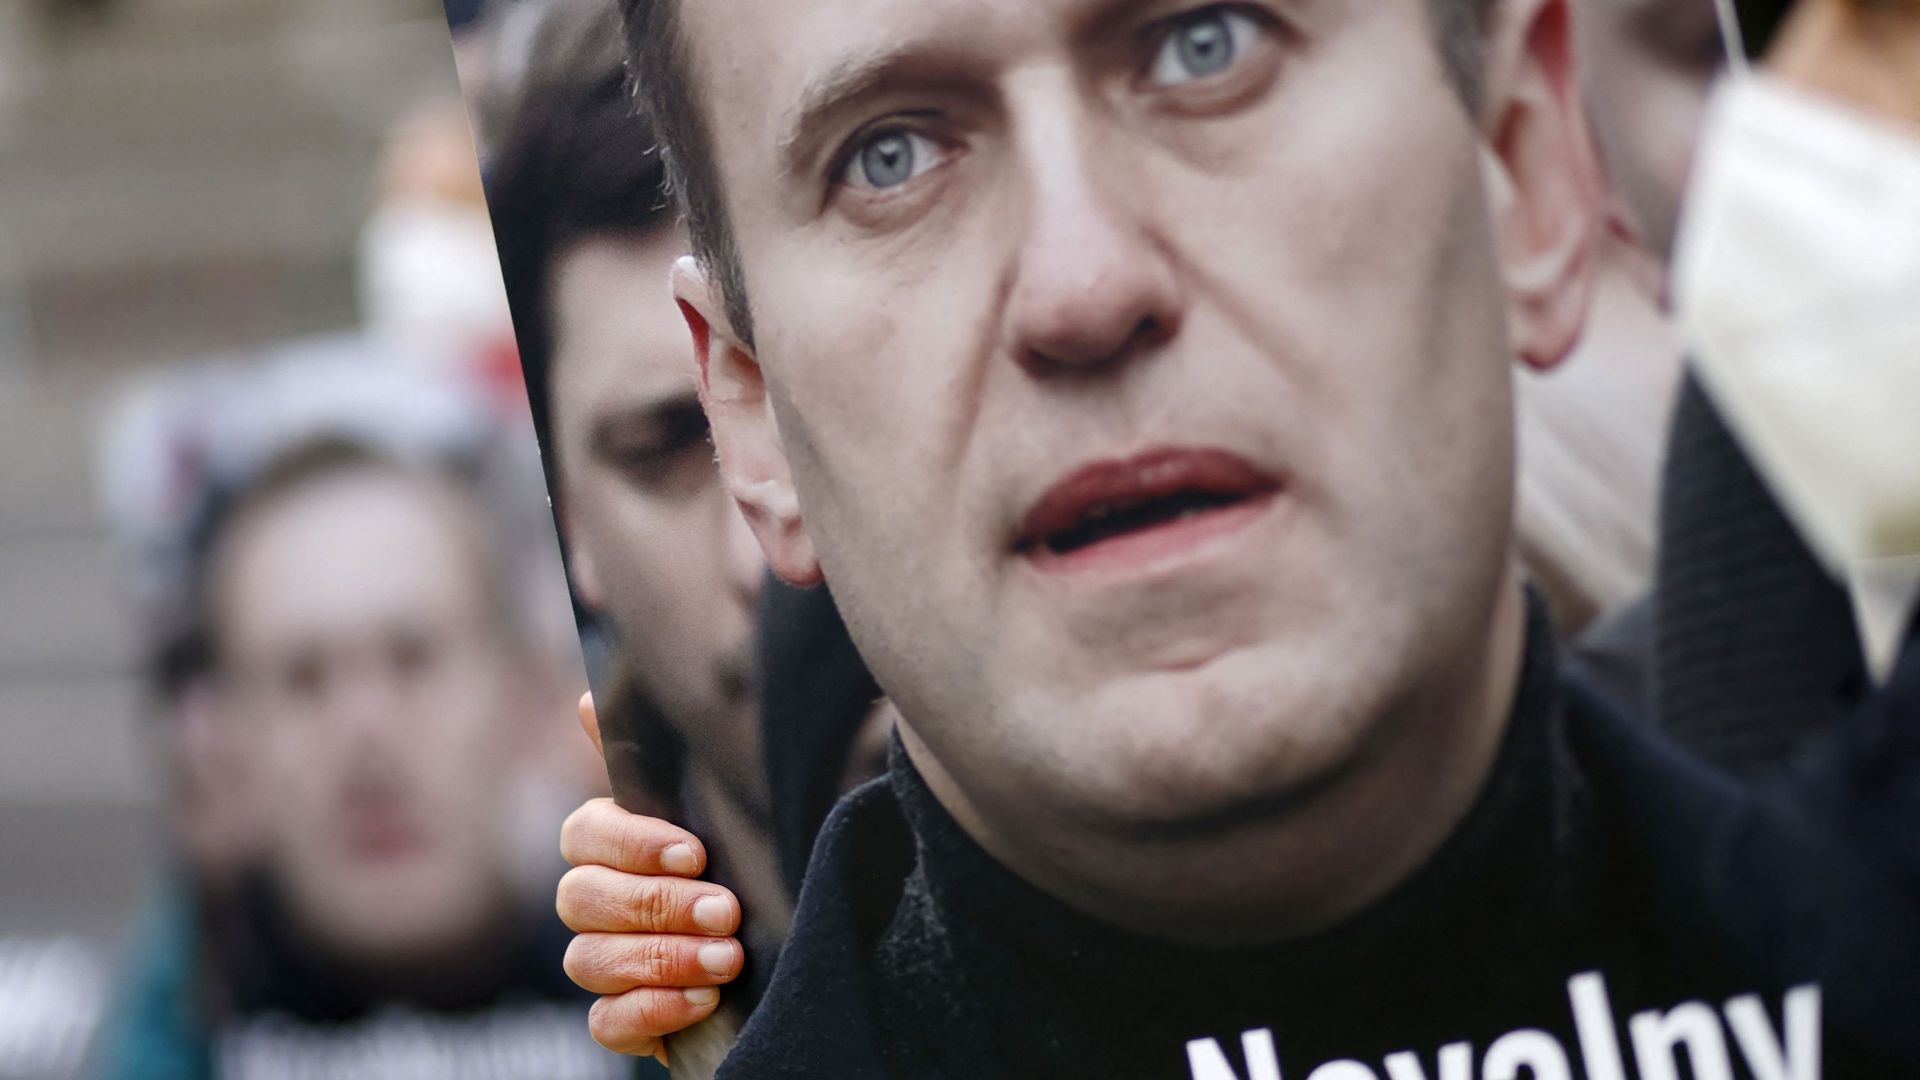 La Wallonie demande la libération immédiate d'Alexeï Navalny et condamne "les atteintes aux droits humains en Russie"